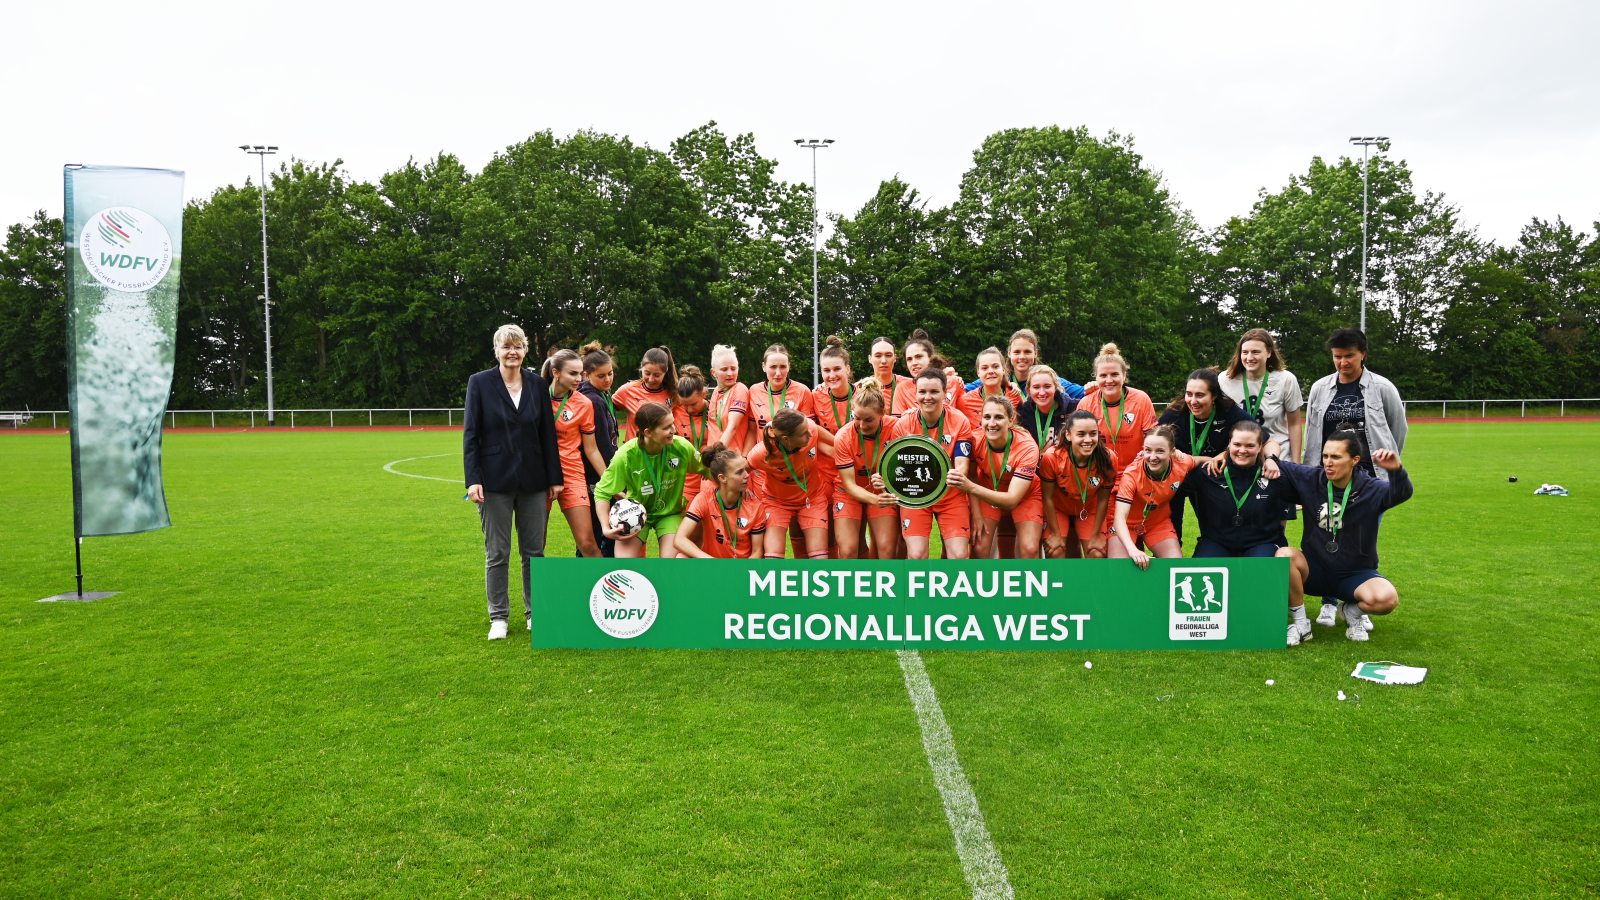 Mannschaftsfoto Frauen VfL Bochum, Fußballspielerinnen freuen sich